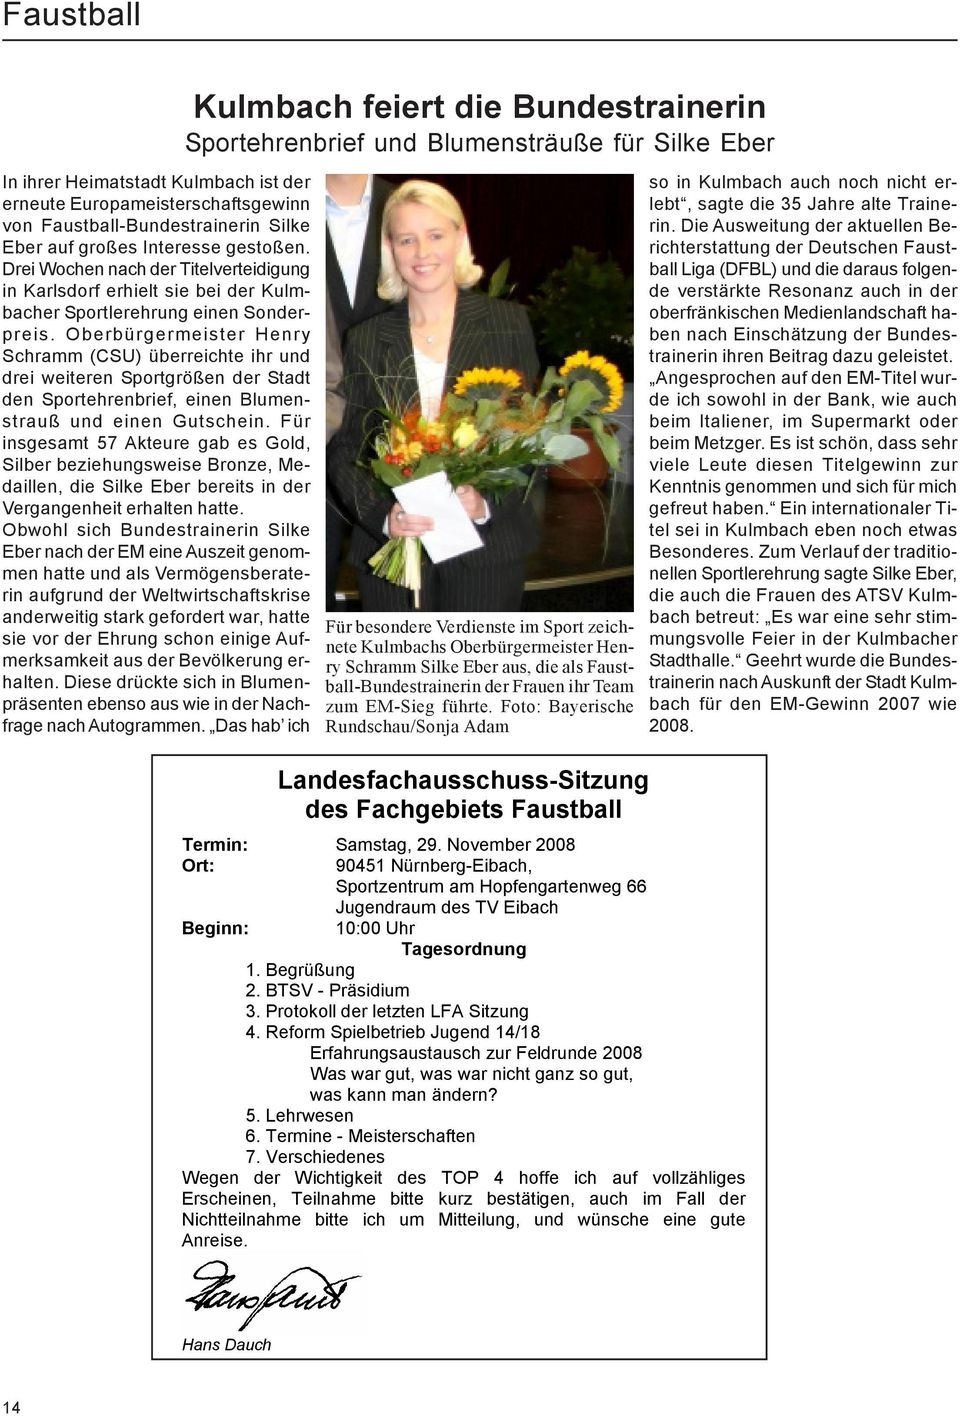 Oberbürgermeister Henry Schramm (CSU) überreichte ihr und drei weiteren Sportgrößen der Stadt den Sportehrenbrief, einen Blumenstrauß und einen Gutschein.